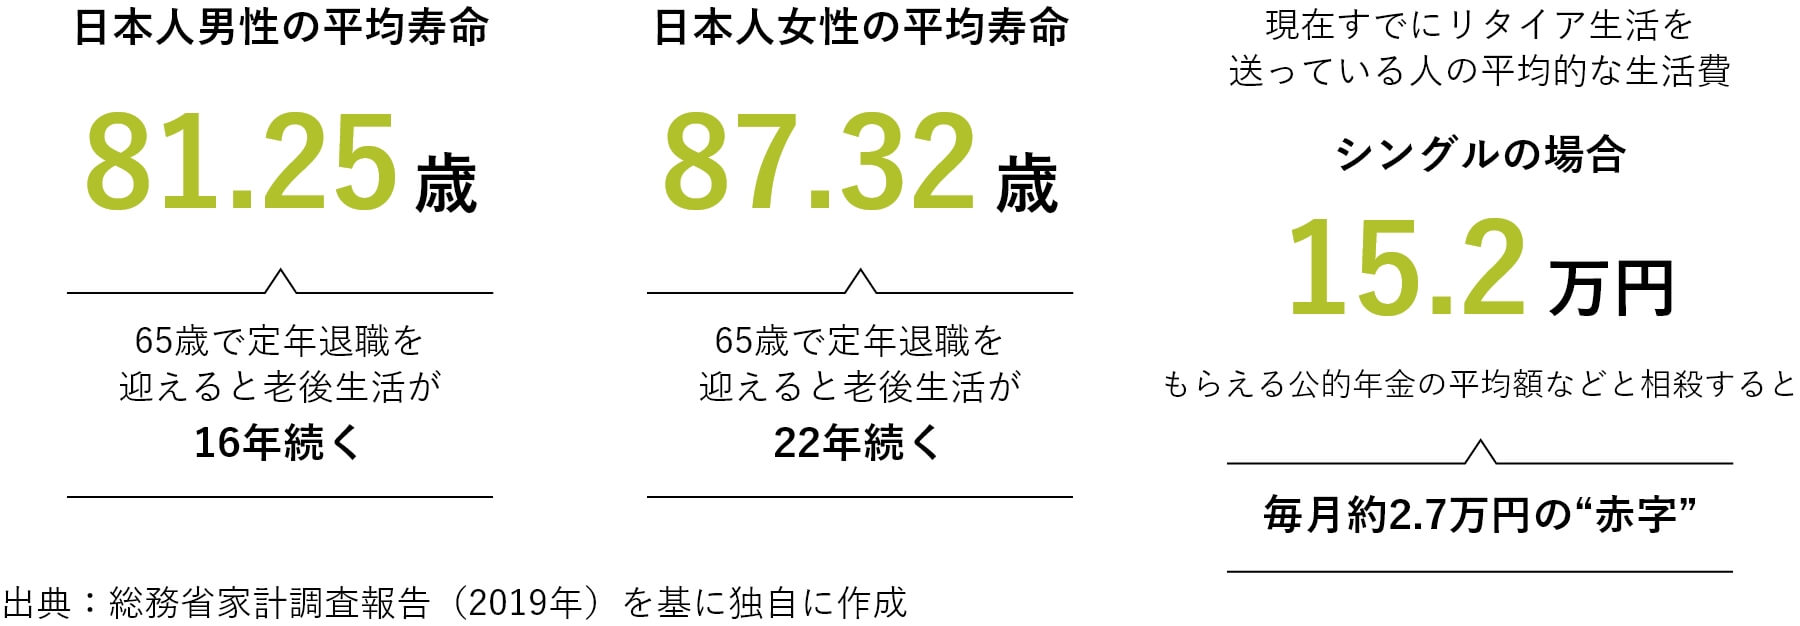 日本人男性の平均寿命81.25歳65歳で定年退職を迎えると老後生活が16年続く日本人女性の平均寿命87.32歳65歳で定年退職を迎えると老後生活が22年続く現在すでにリタイア生活を送っている人の平均的な生活費シングルの場合15.2万円もらえる公的年金の平均額などと相殺すると毎月約2.7万円の“赤字”出典：総務省家計調査報告（2019年）を基に独自に作成